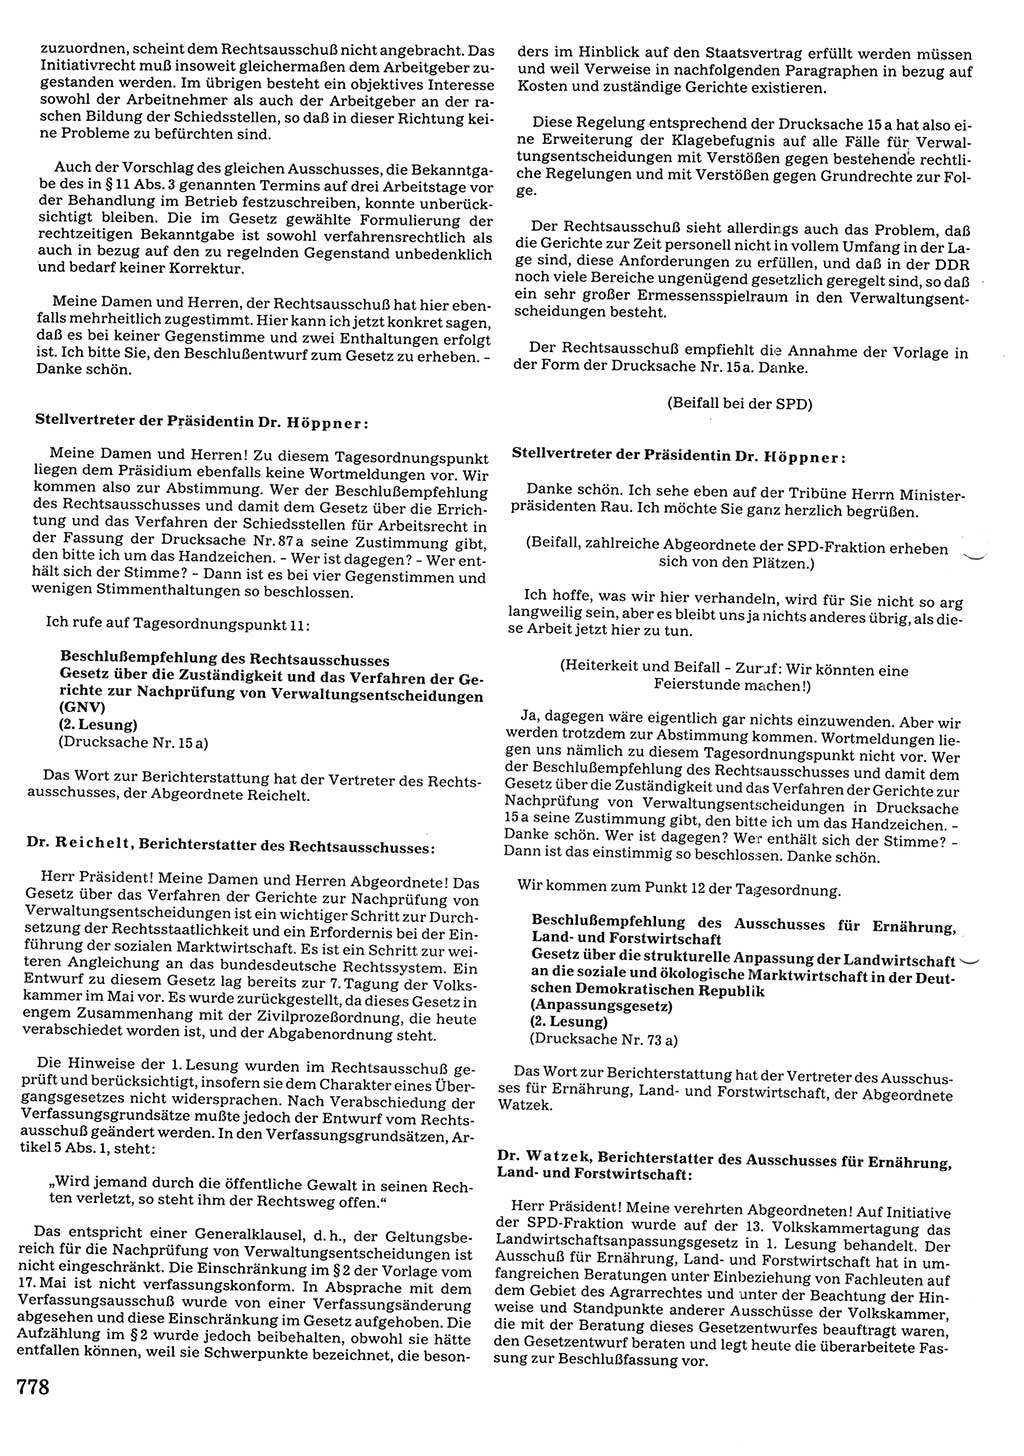 Tagungen der Volkskammer (VK) der Deutschen Demokratischen Republik (DDR), 10. Wahlperiode 1990, Seite 778 (VK. DDR 10. WP. 1990, Prot. Tg. 1-38, 5.4.-2.10.1990, S. 778)